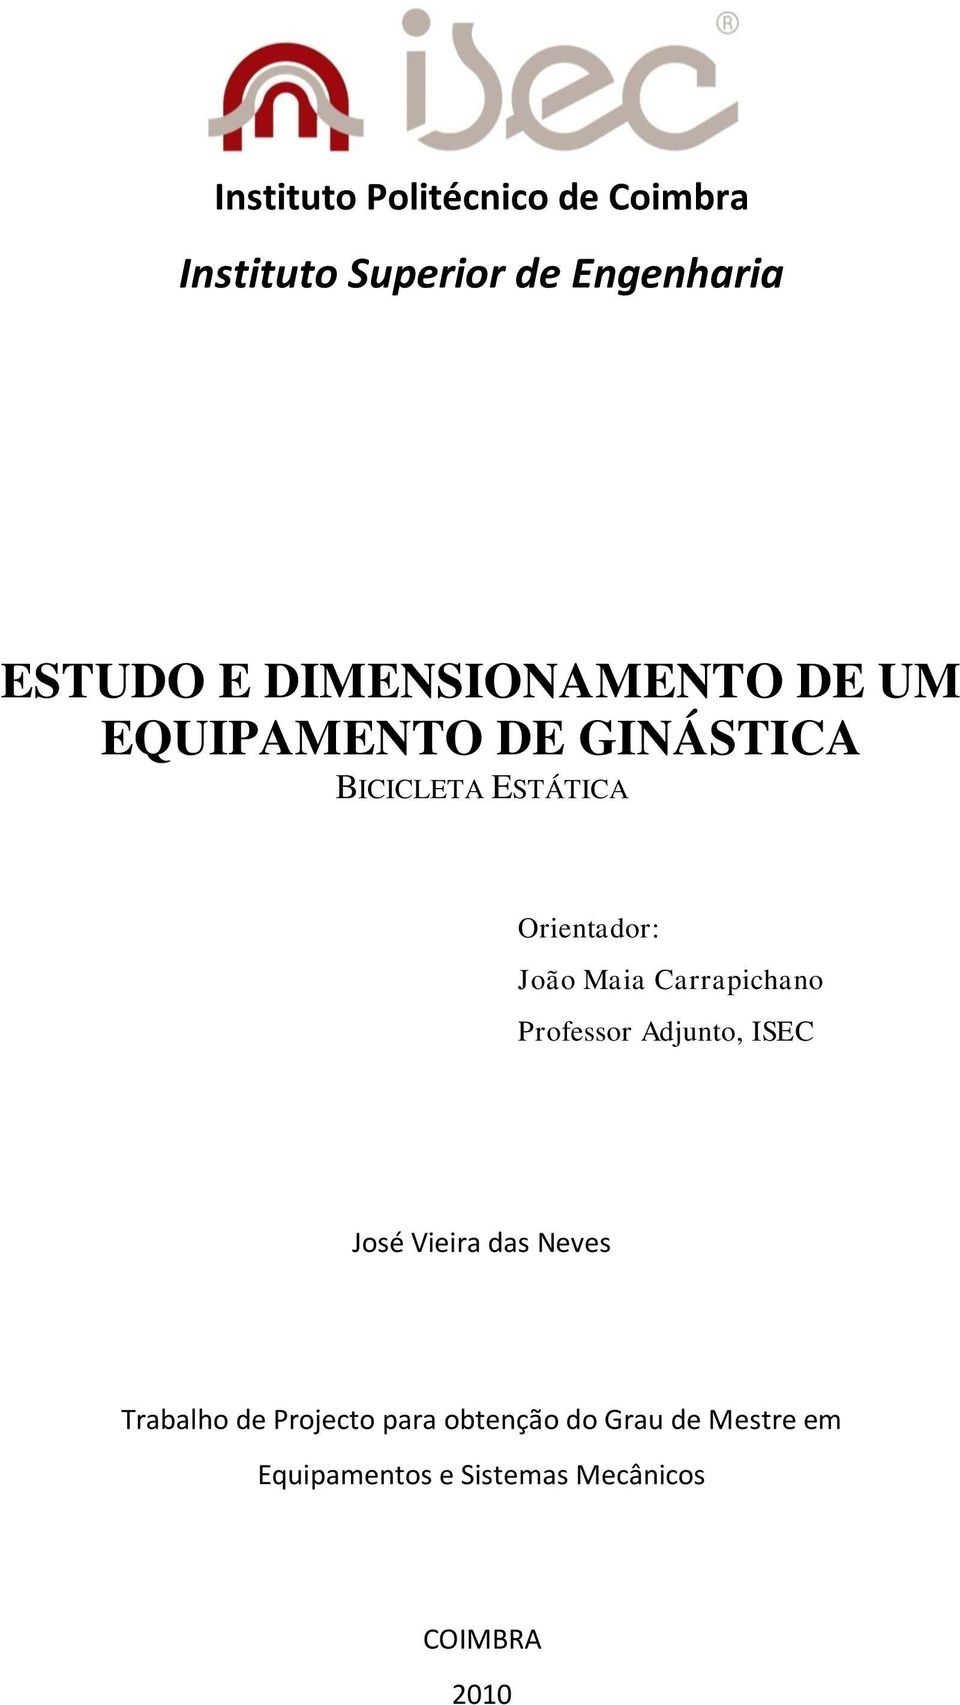 João Maia Carrapichano Professor Adjunto, ISEC José Vieira das Neves Trabalho de